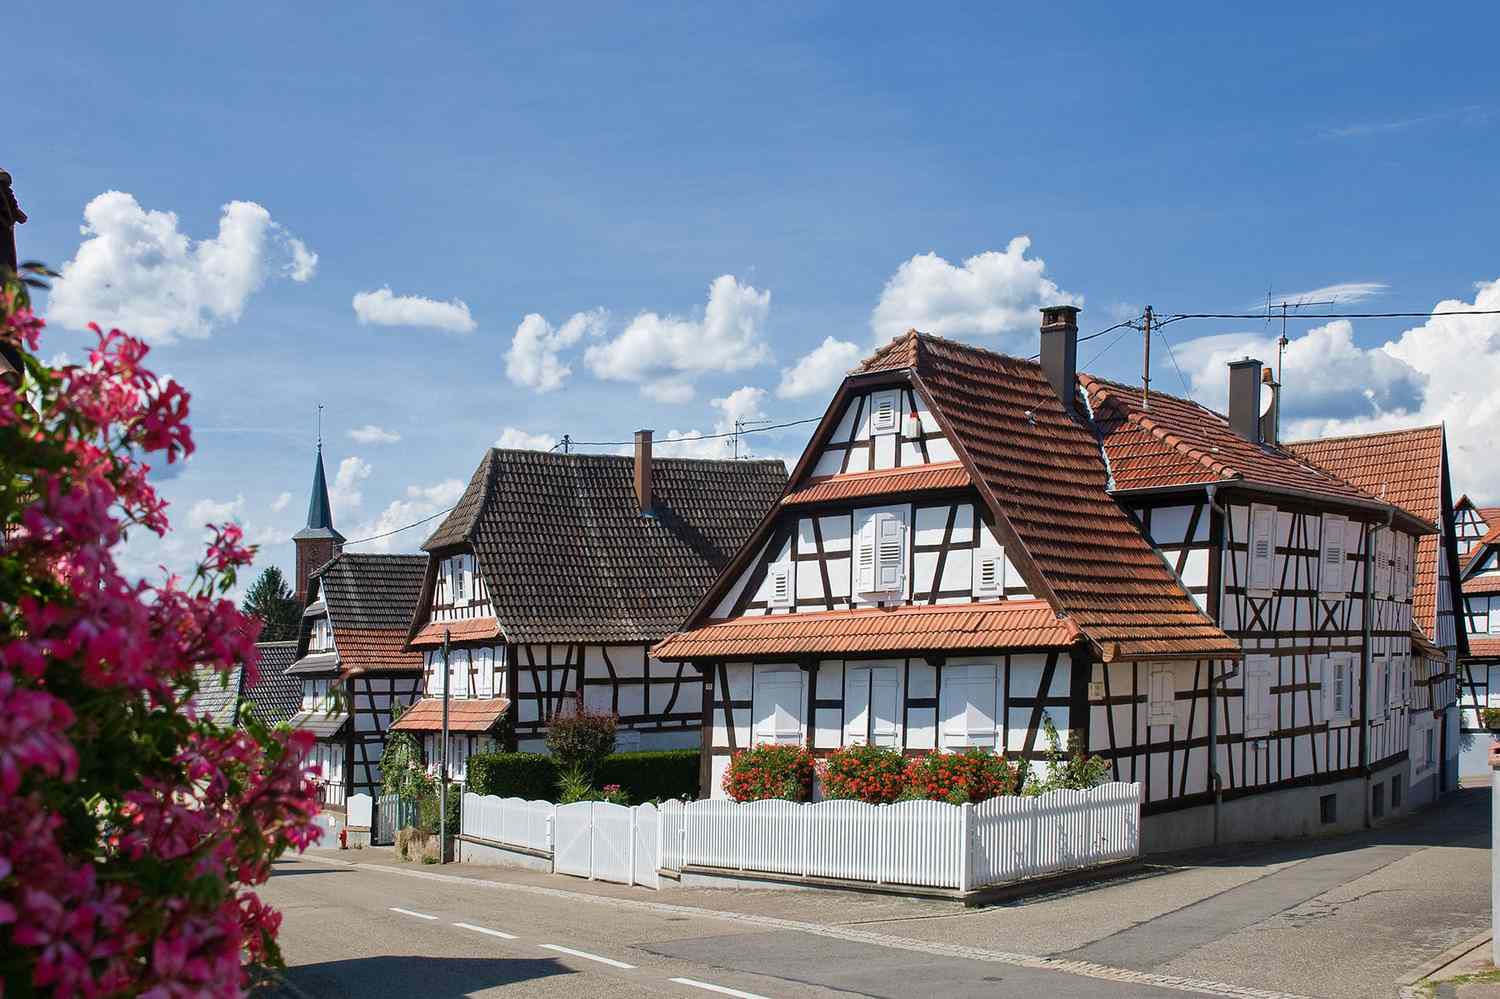 Maisons à colombages à Hunspach, département du Bas-Rhin dans la région Grand Est, France